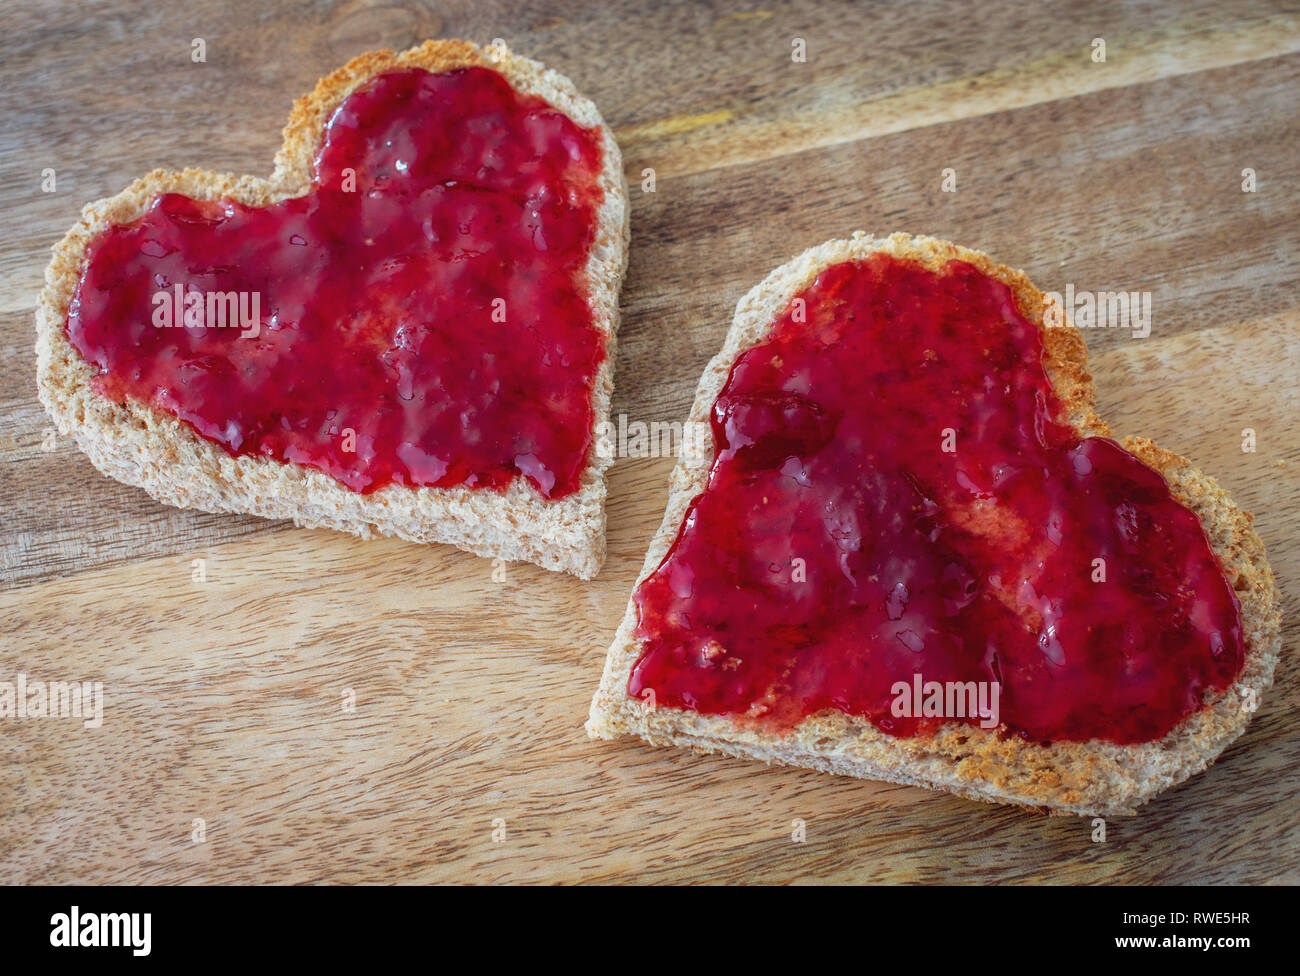 Herzförmige Toast mit Marmelade Stockfotografie - Alamy